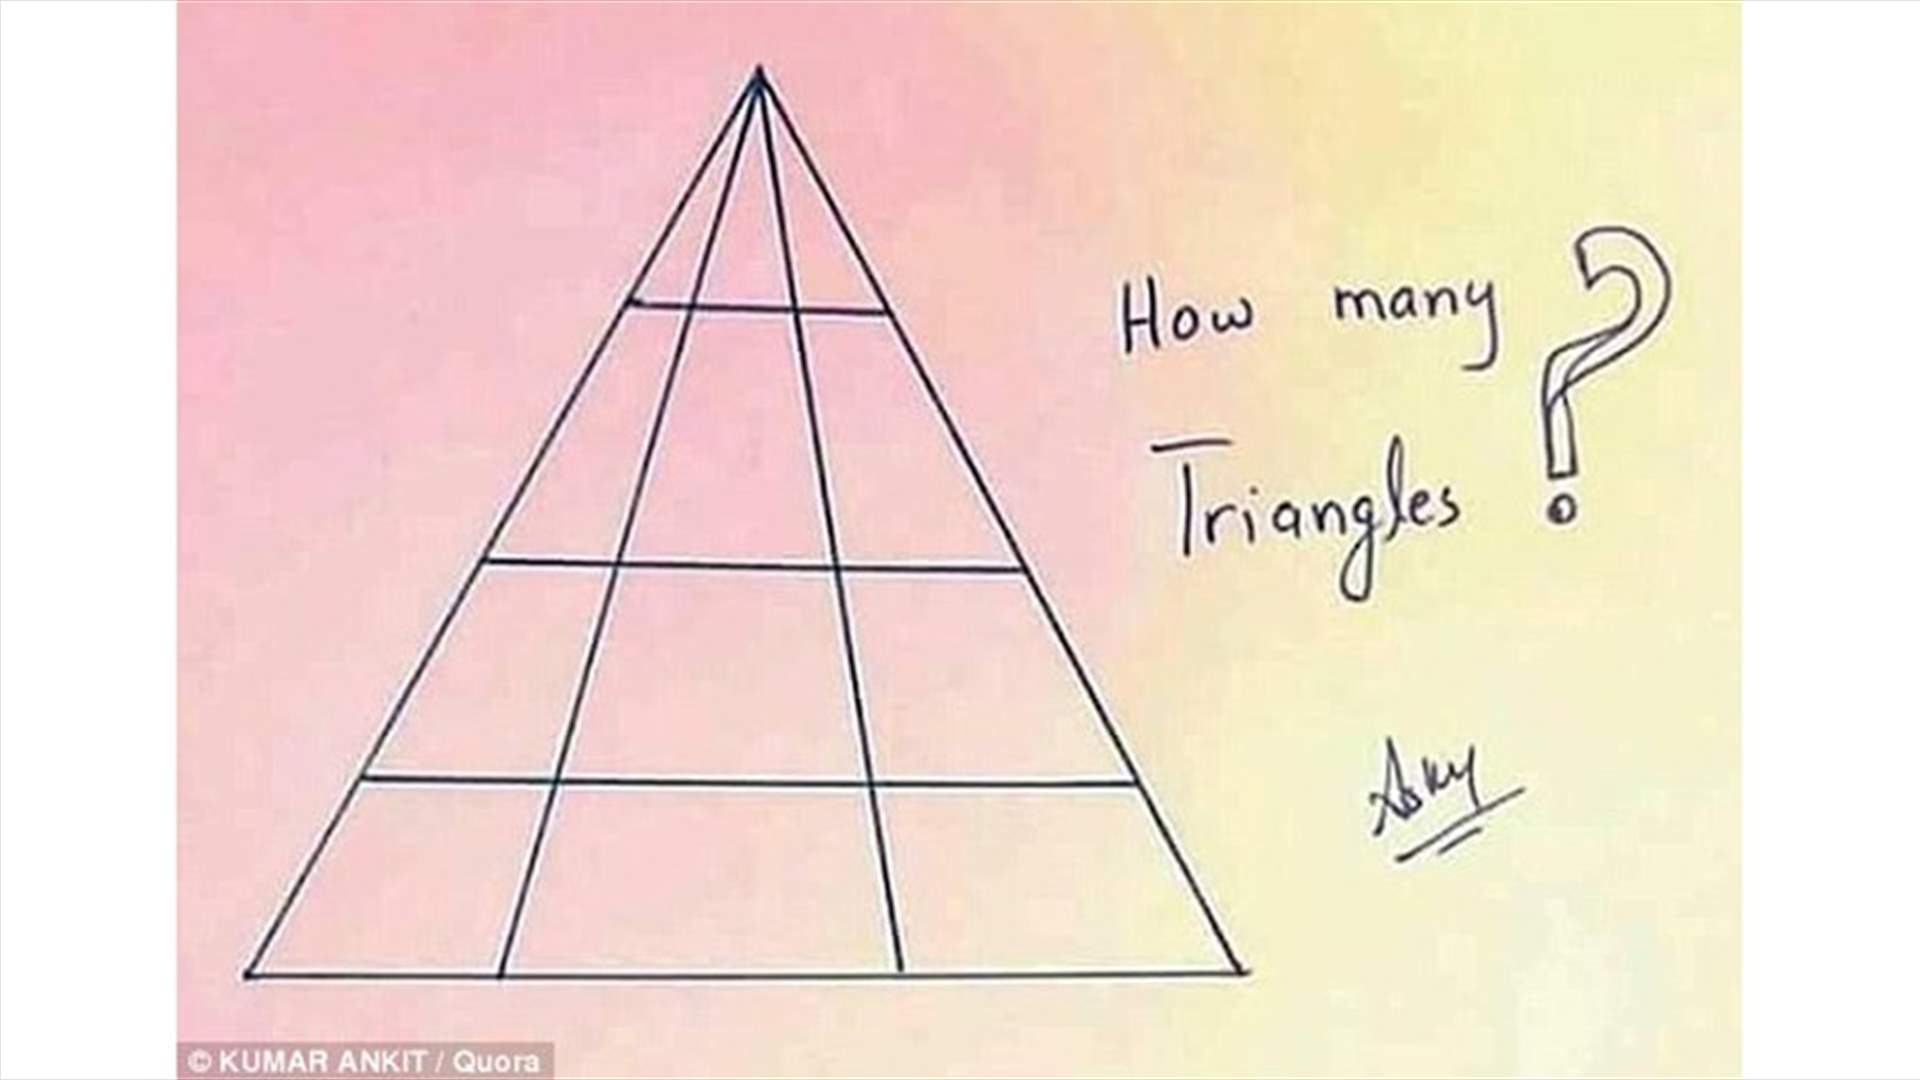 بالصورة - خدعة جديدة تجتاح الانترنت... احزروا عدد المثلثات!